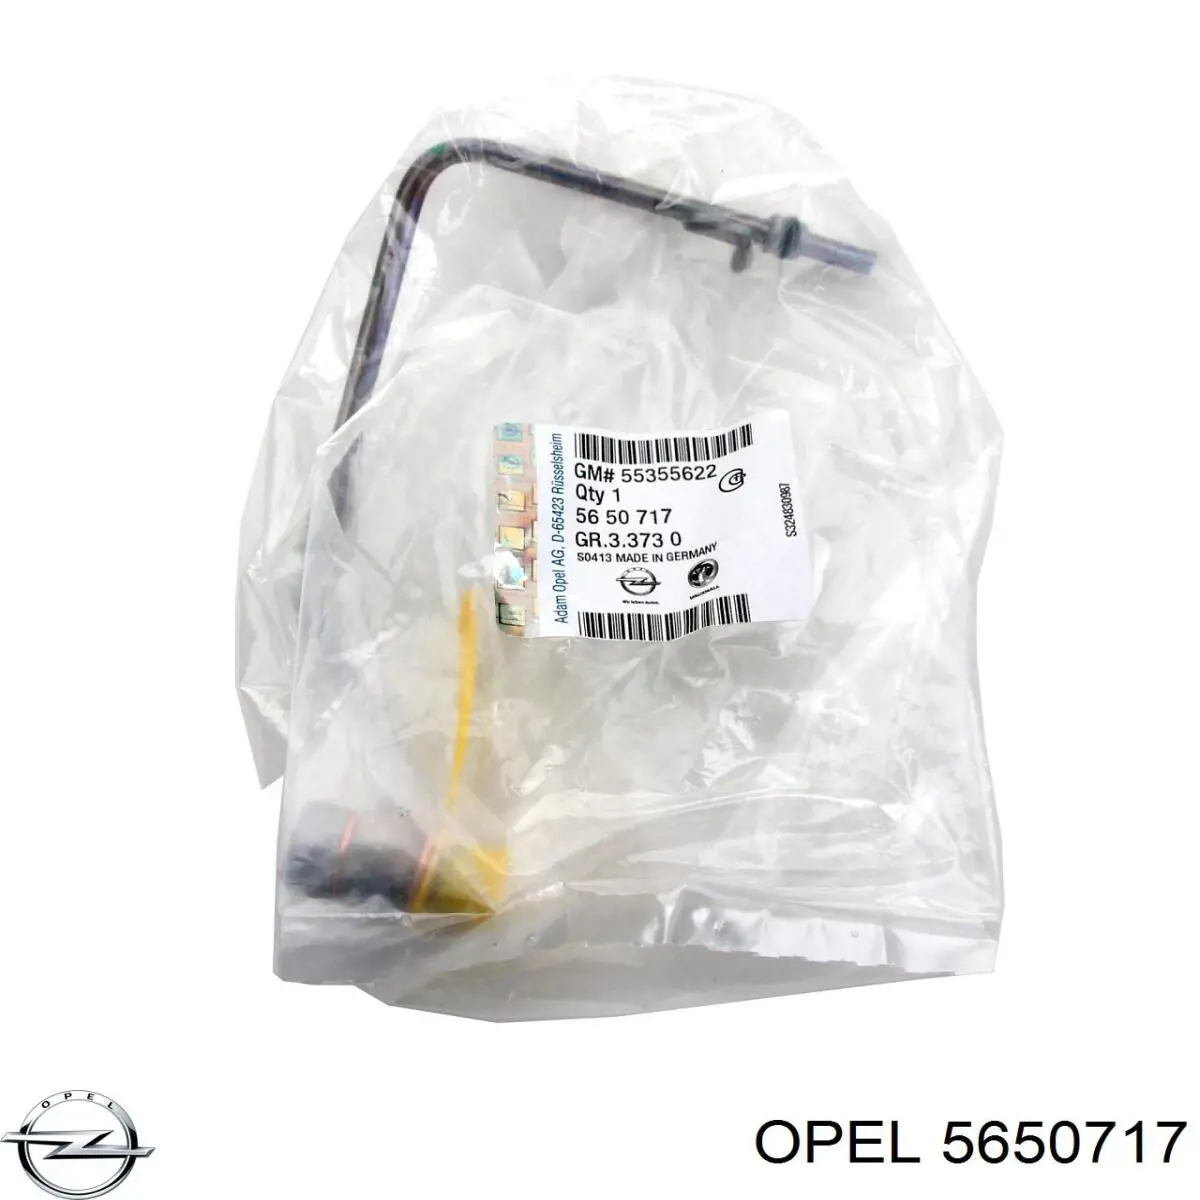 5650717 Opel tubo (manguera Para El Suministro De Aceite A La Turbina)